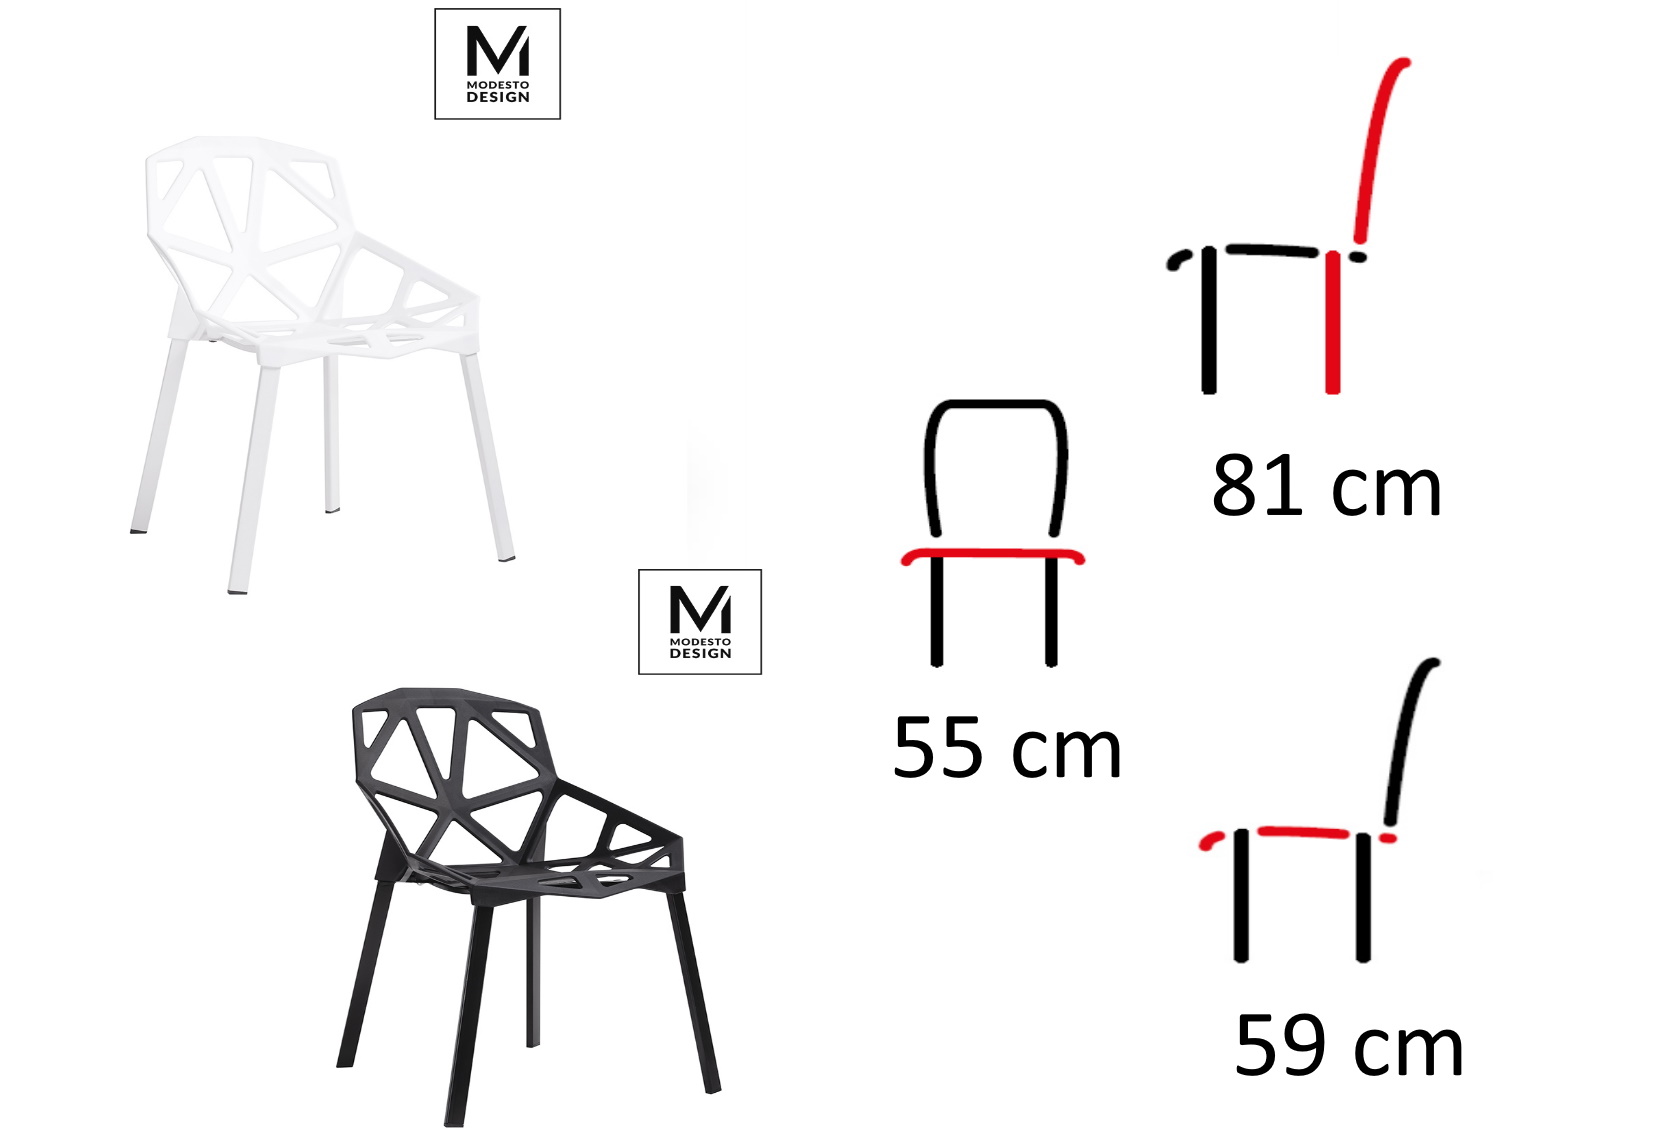 krzesła ażurowe split mat modesto design, wymiary